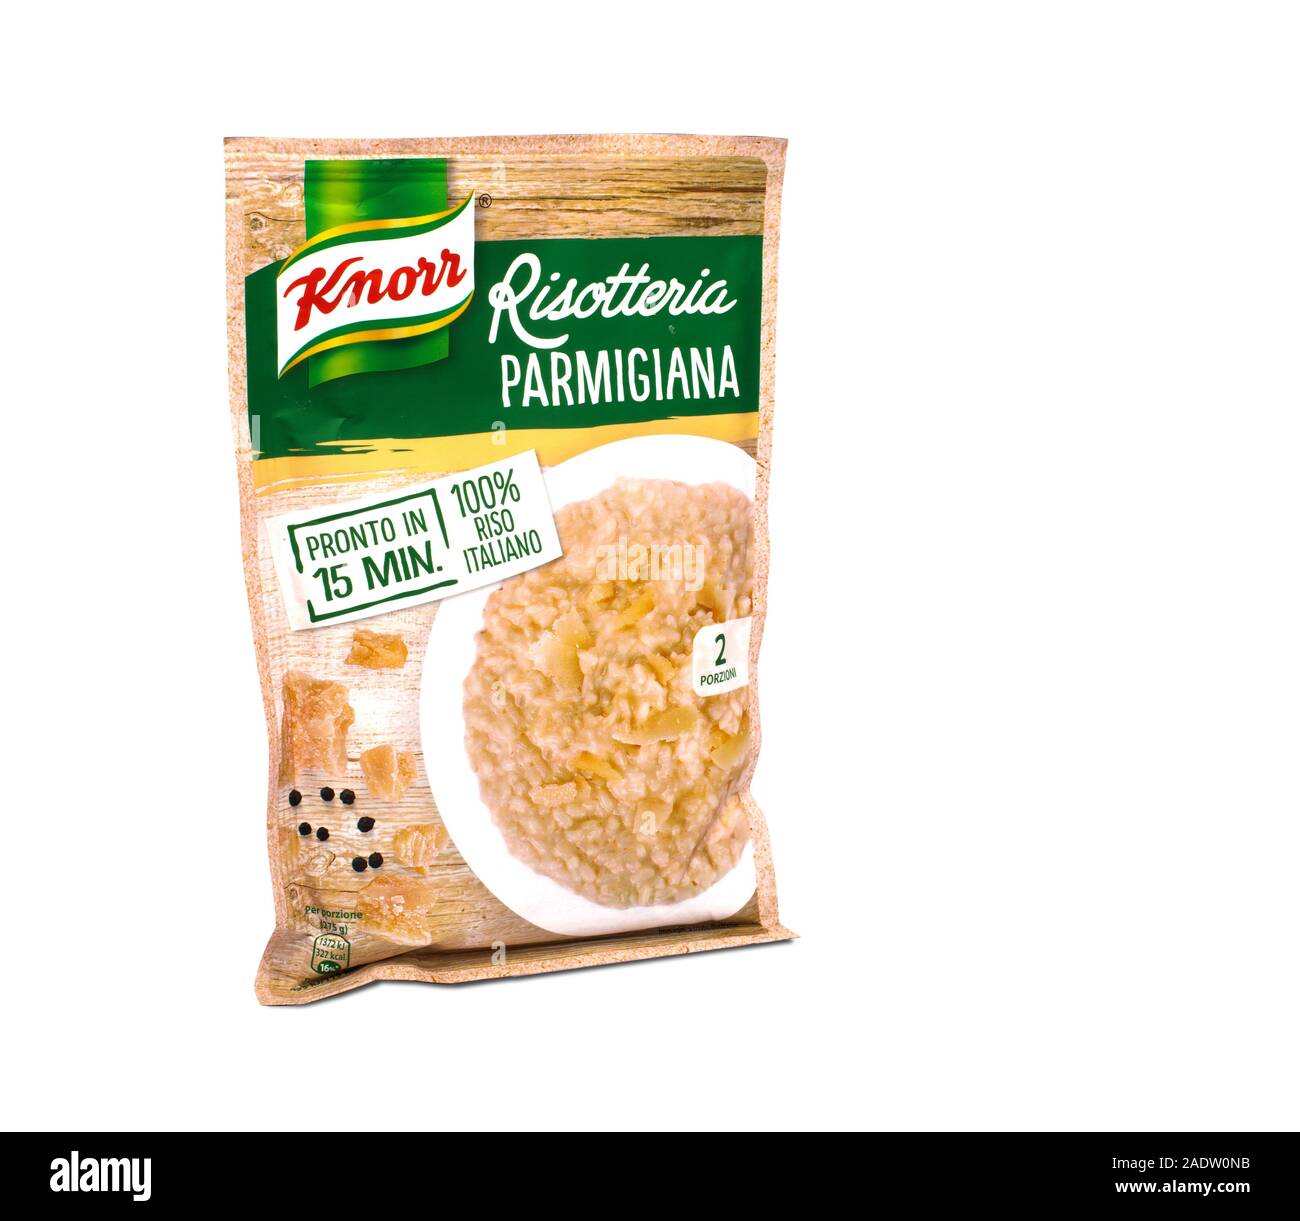 Italia - Noviembre 8, 2019: paquete de arroz parmesano deshidratado listos para ser cocinados por Knorr Foto de stock